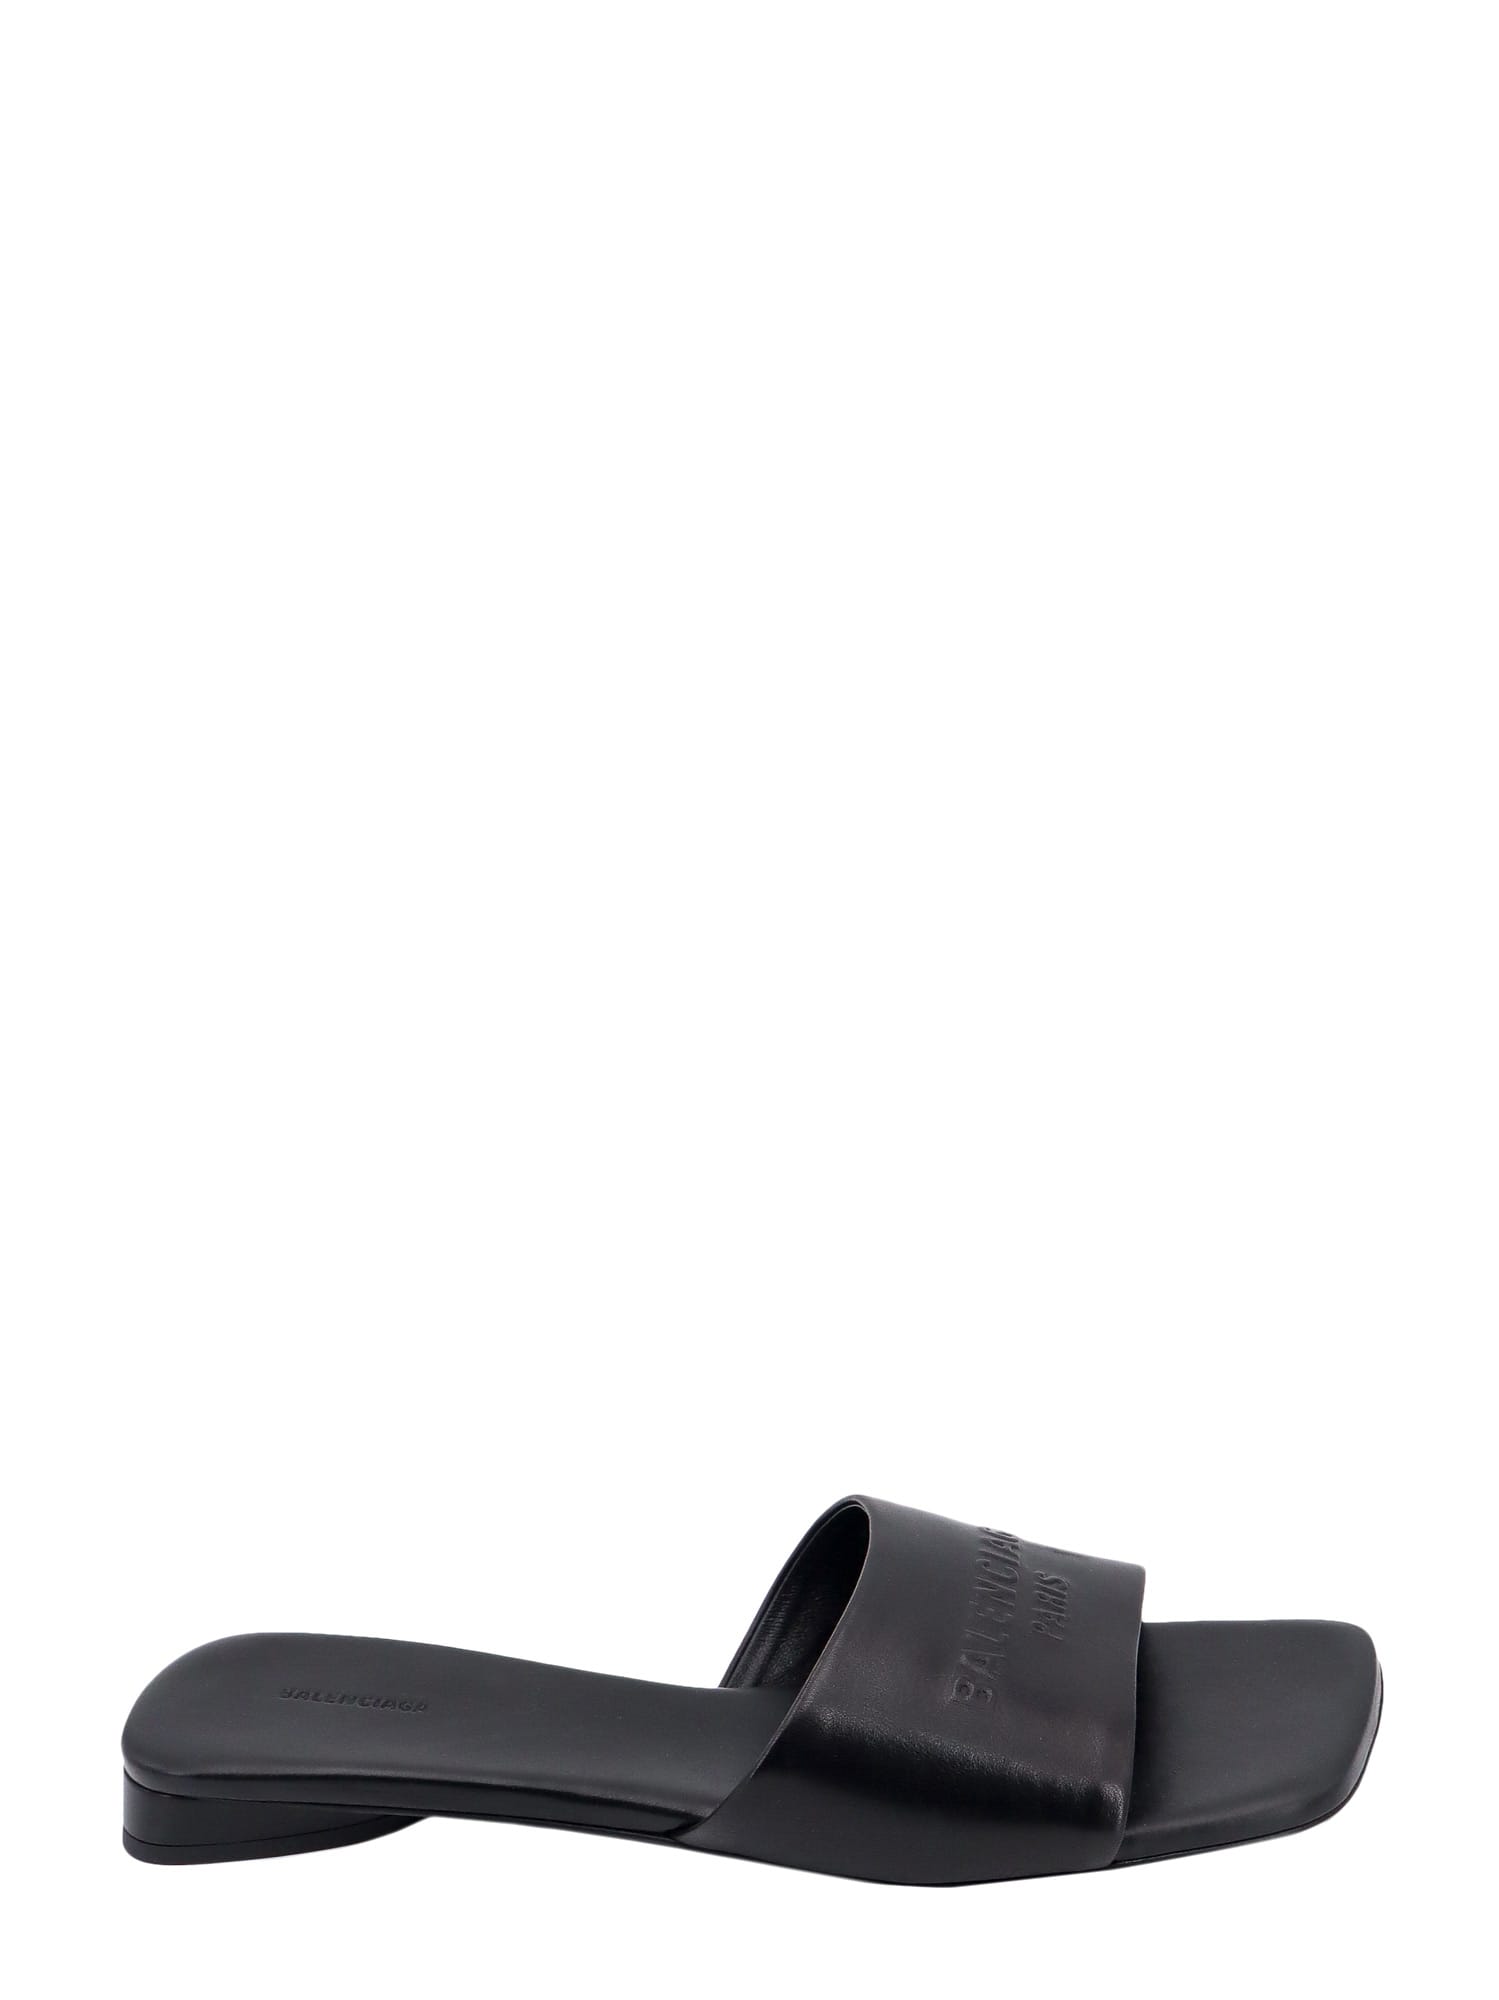 Shop Balenciaga Duty Free Sandals In Black